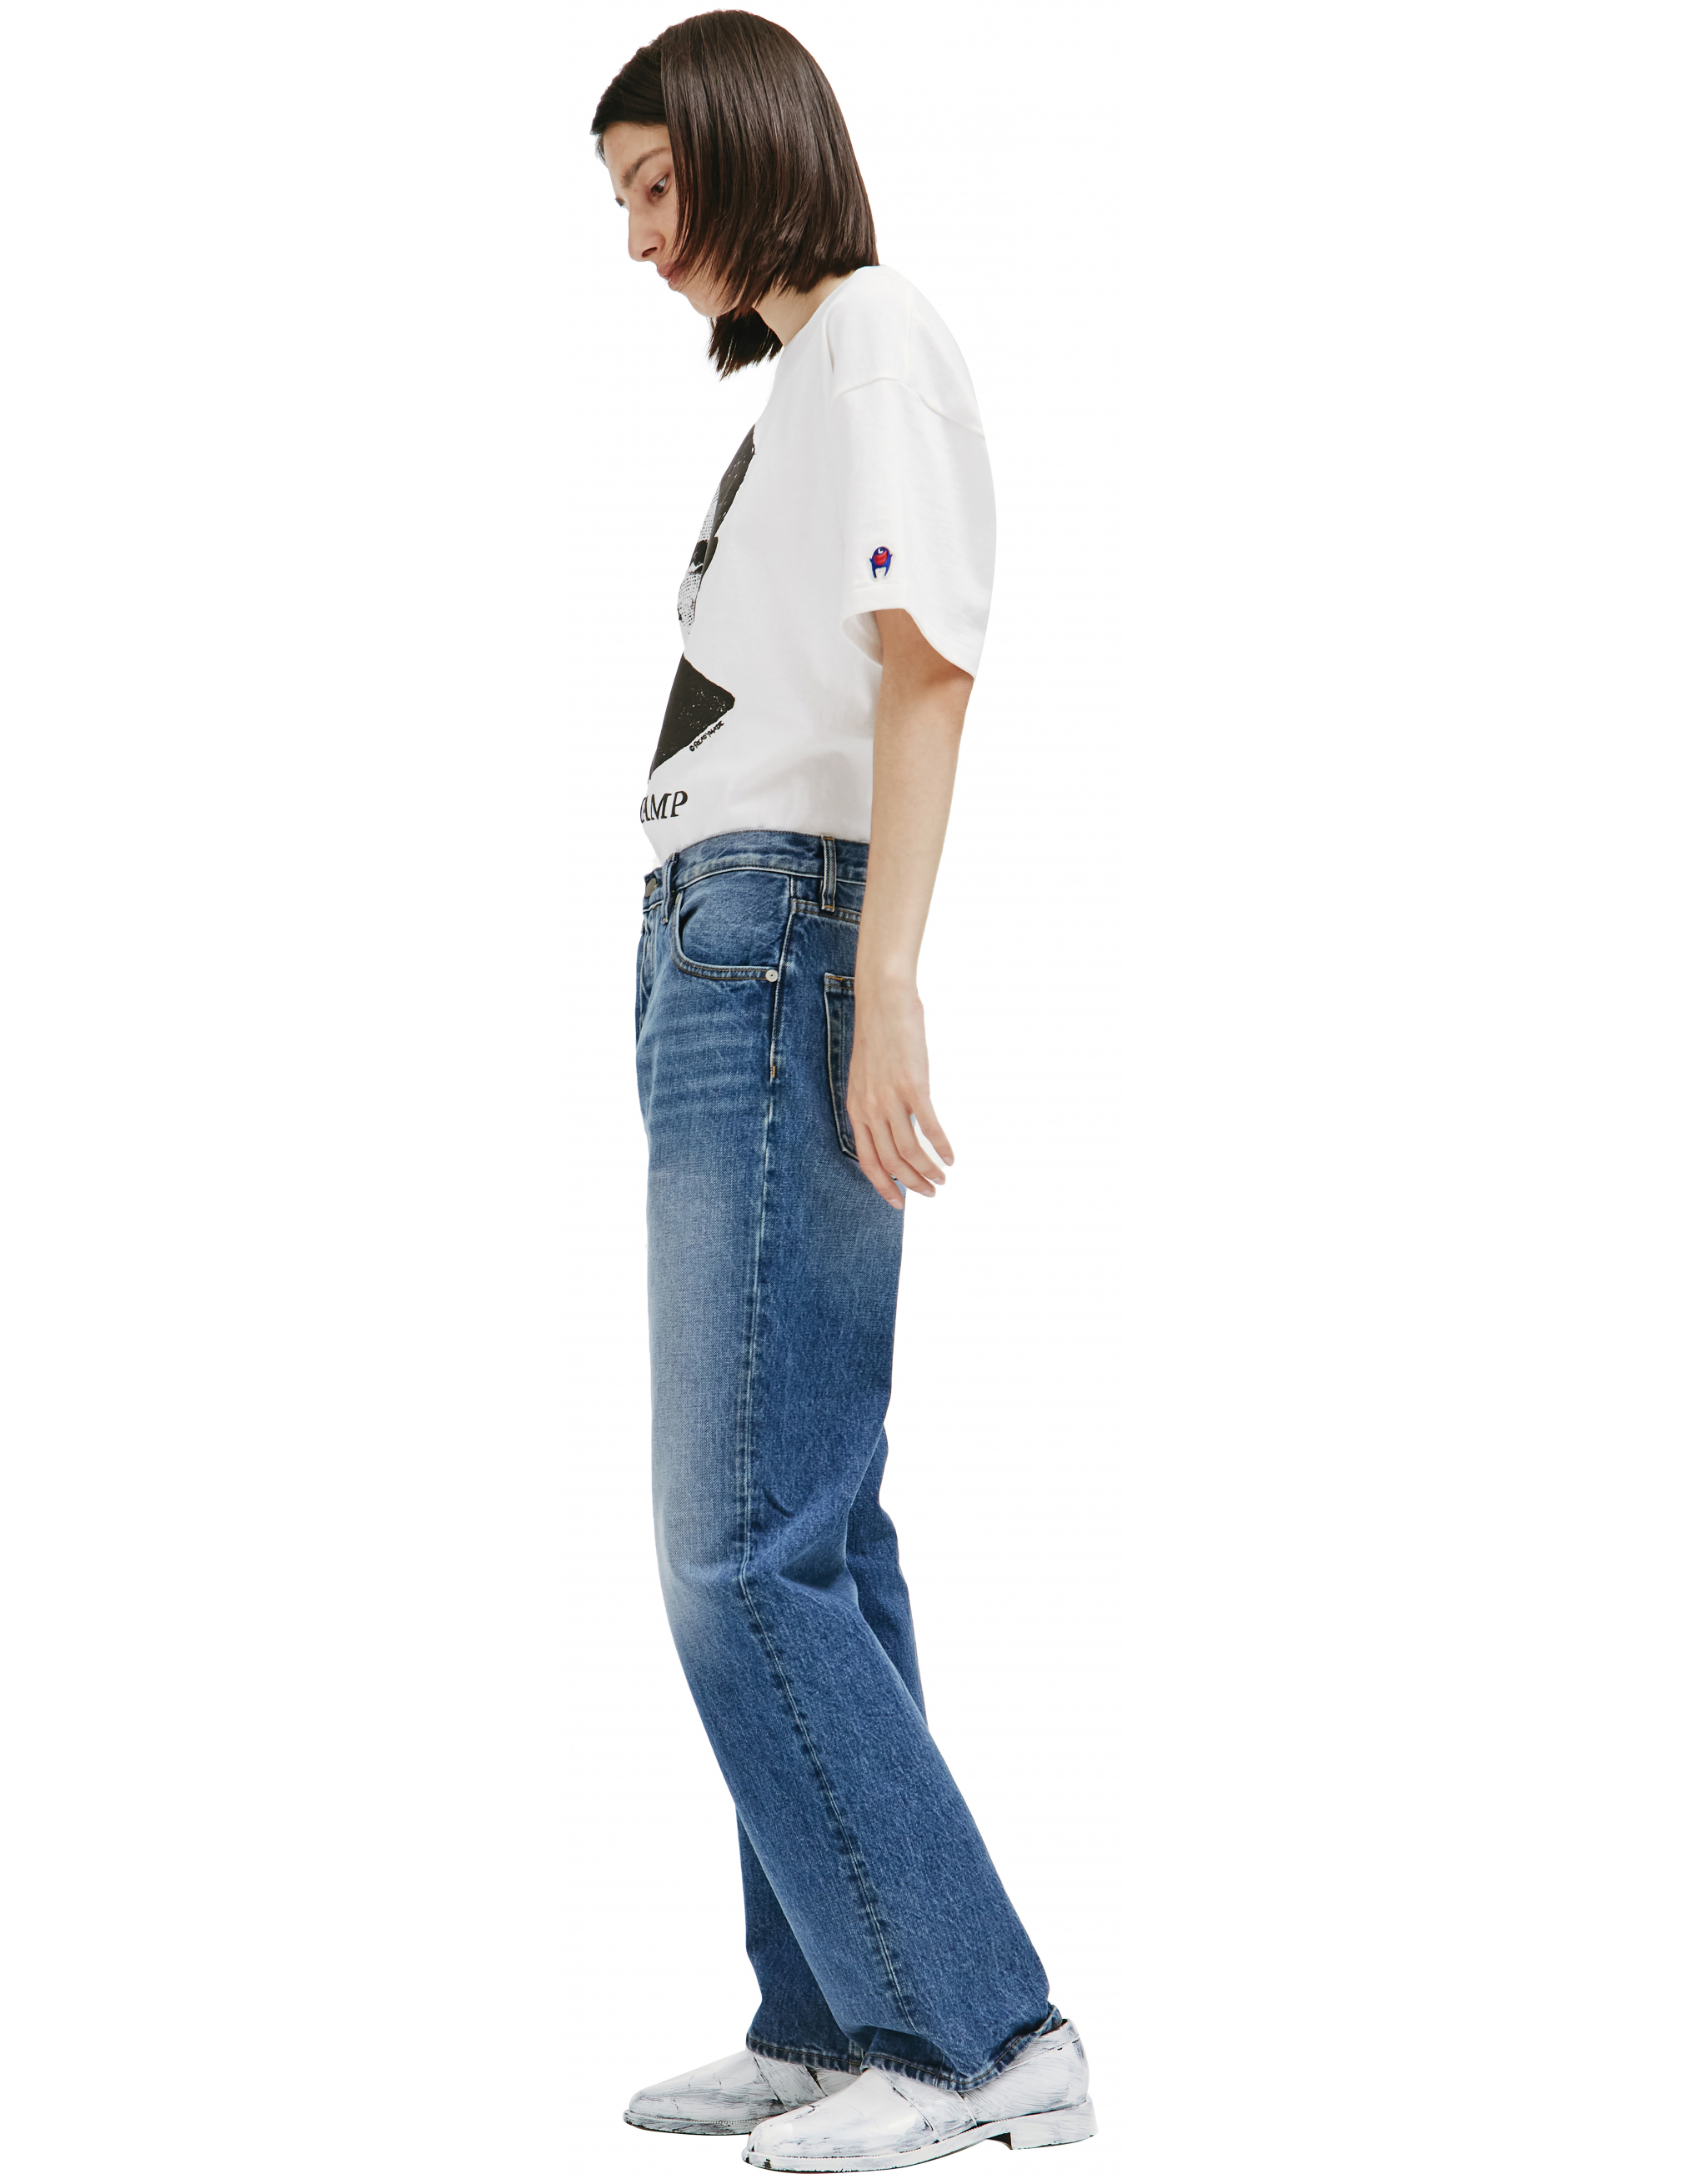 Прямые джинсы синего цвета - Maison Margiela S50LA0189/S30561/966 Фото 2